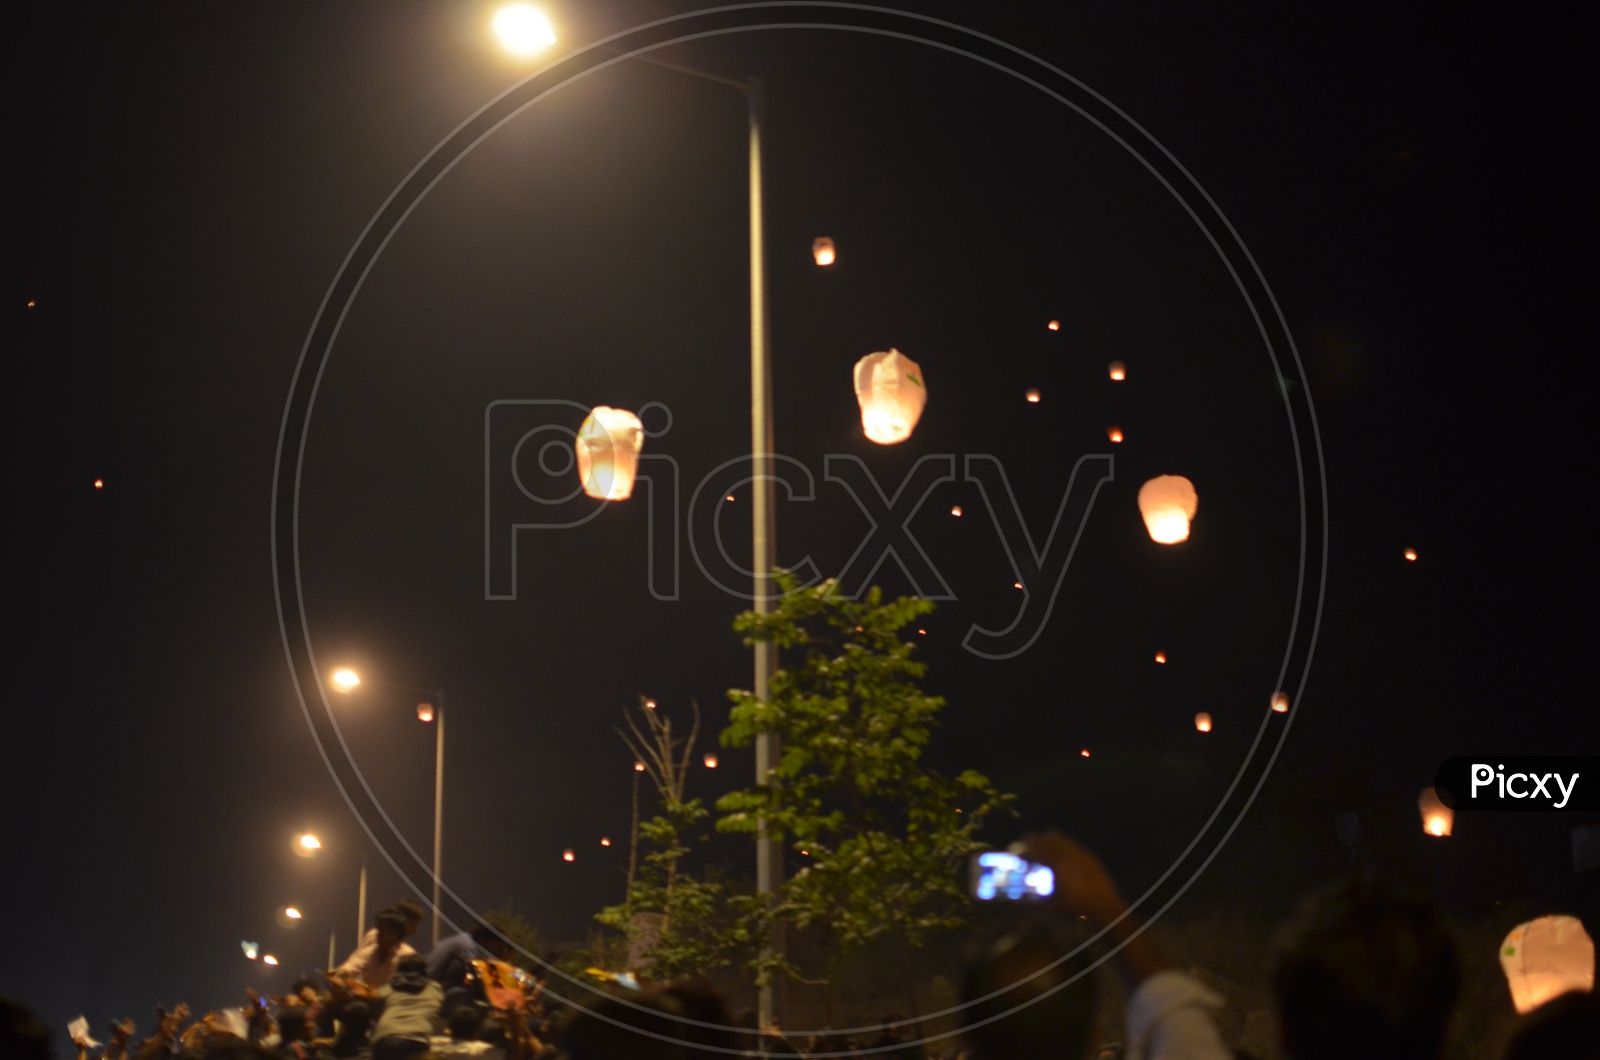 People Flying Sky Lanterns / Chinese Lanterns / Kongming Lanterns /Lumina Lantern Festival at Gachibowli Stadium